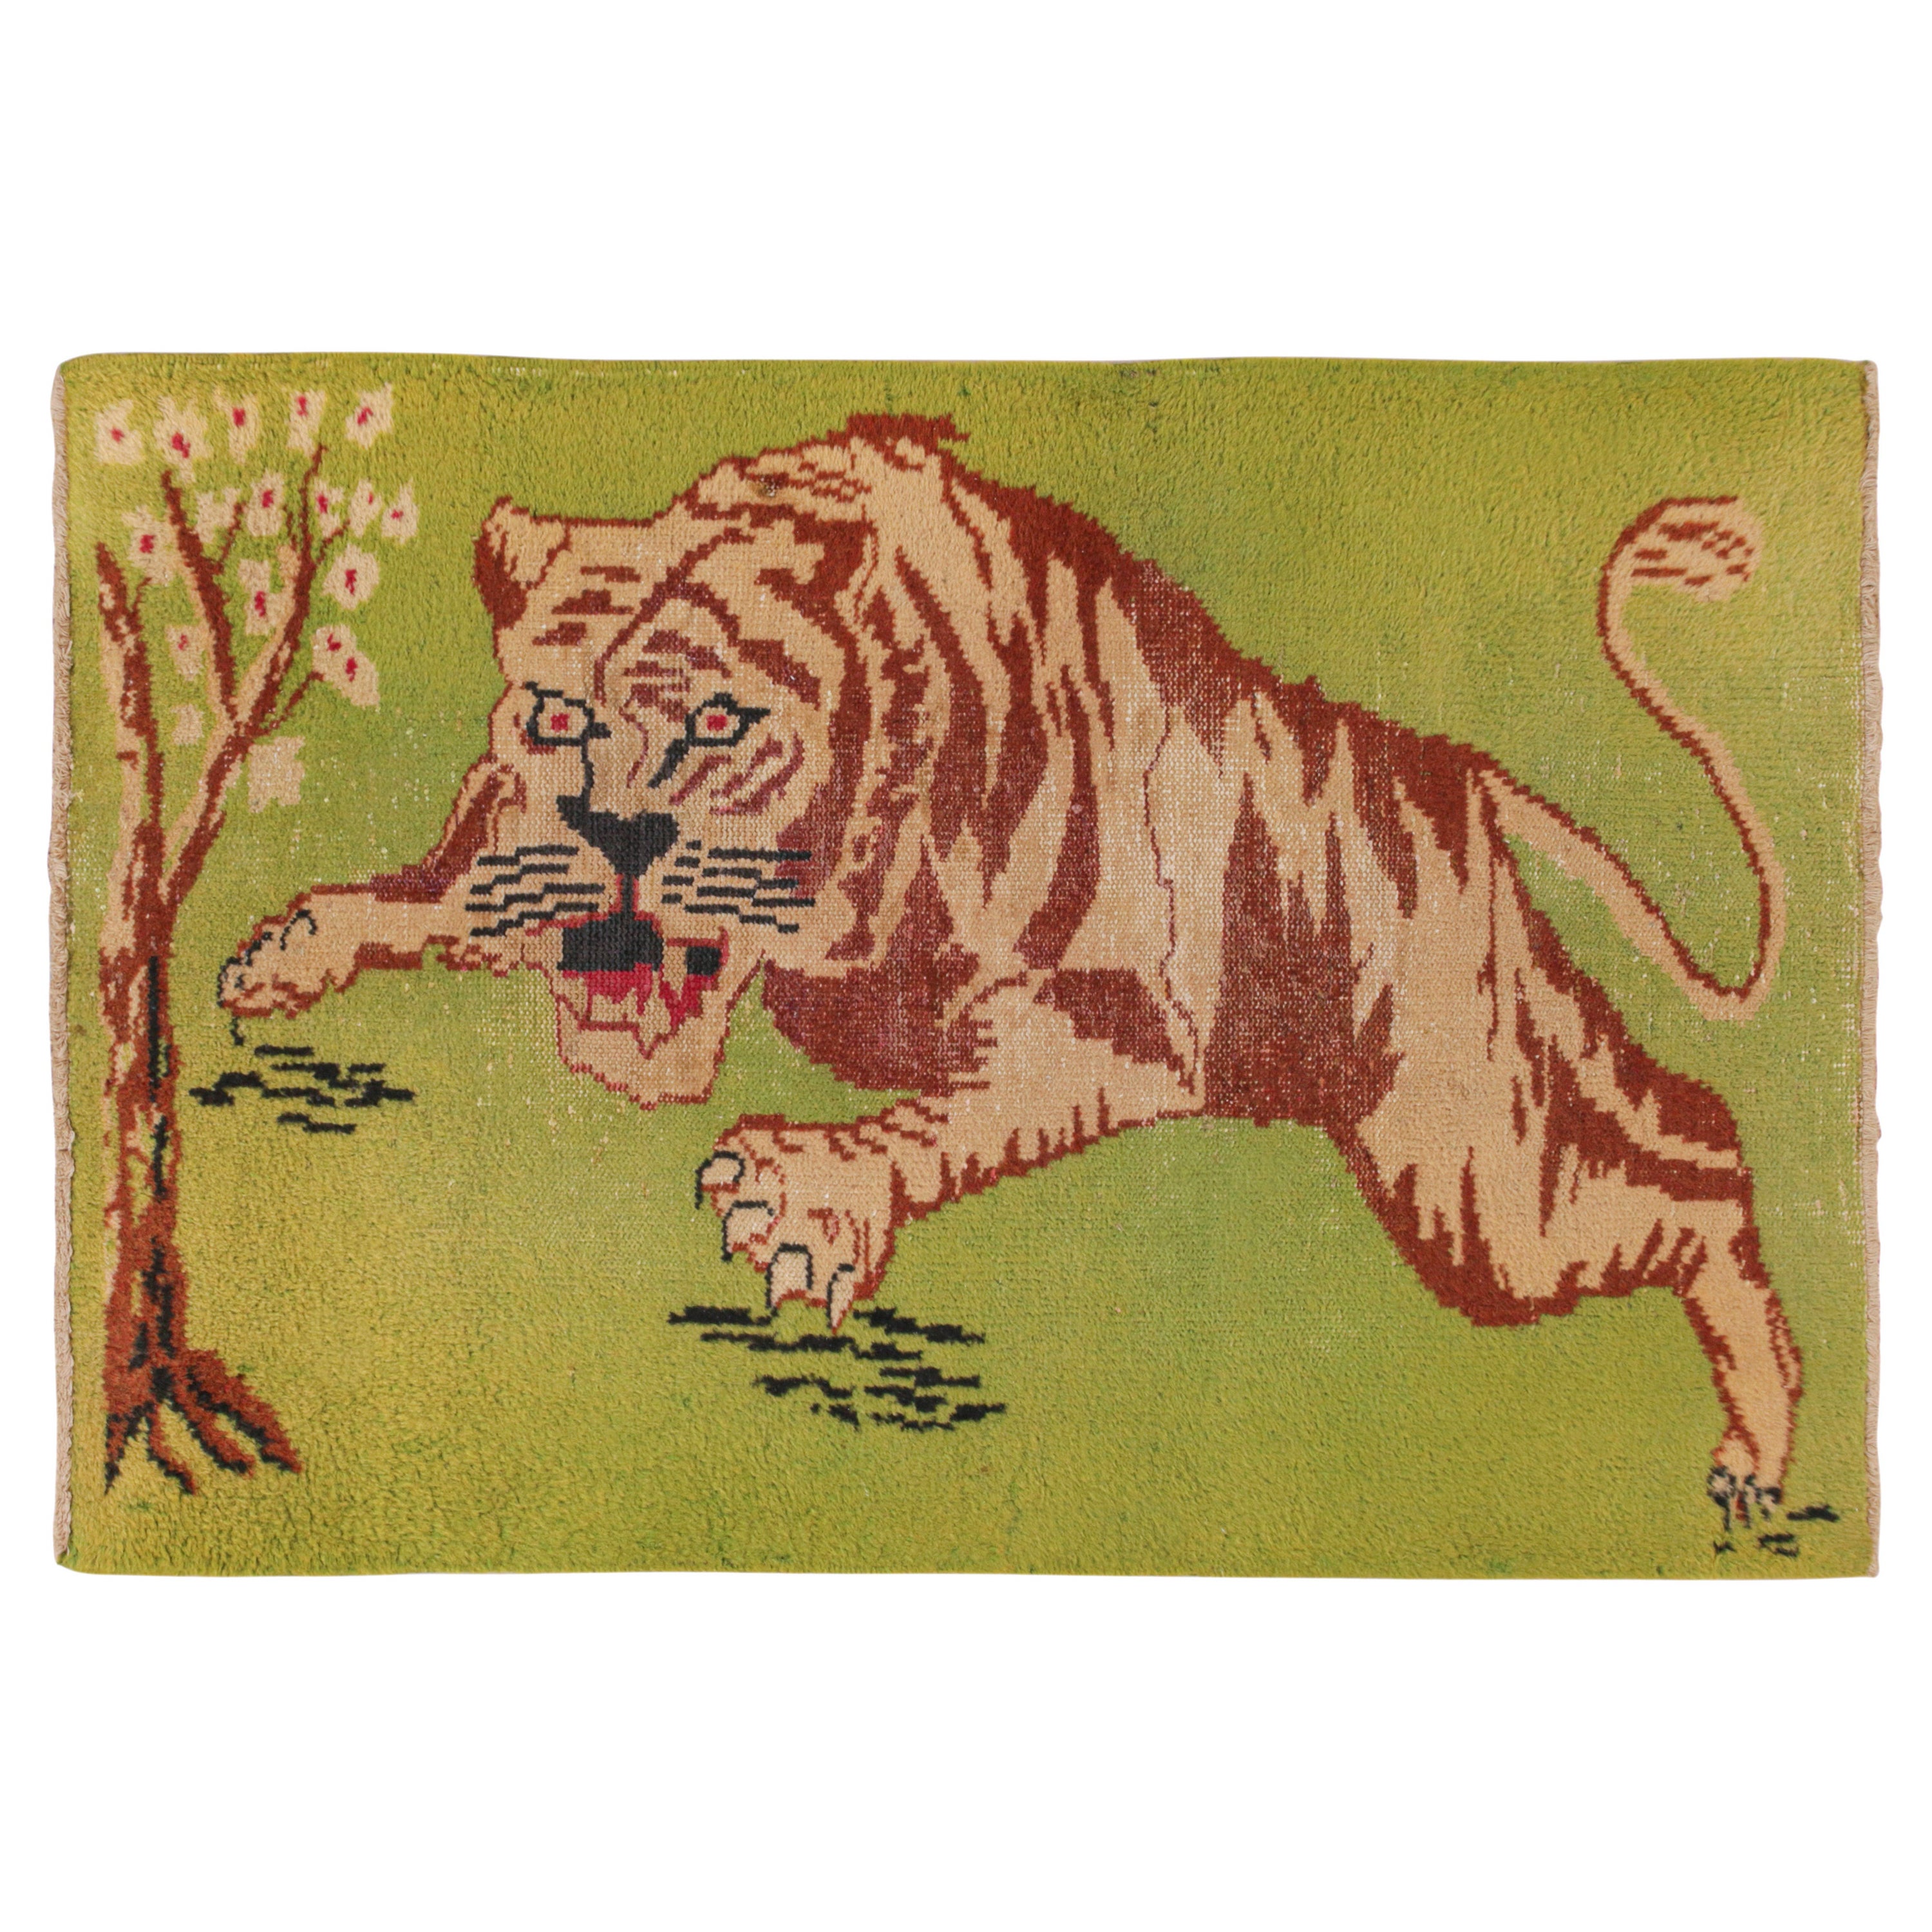 Vintage Tiger Rug - 66 For Sale on 1stDibs | bessarabian tigers